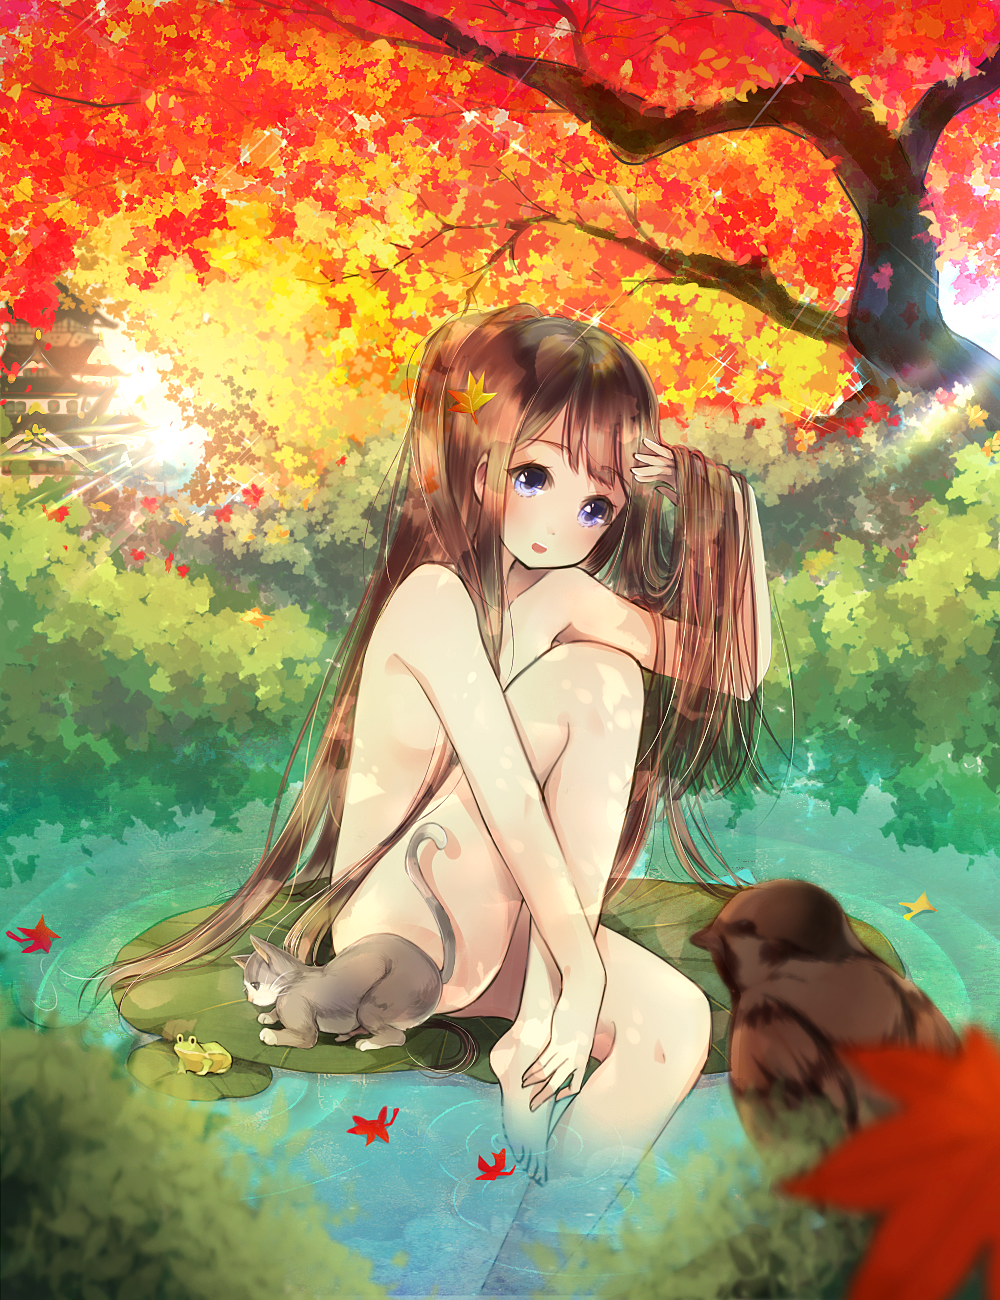 Фото Обнаженная девочка с длинными волосами сидит на листе кувшинки в пруду под осенним деревом с опадающими красными листьями, рядом котенок смотрит на лягушку, из кустов выглядывает птичка